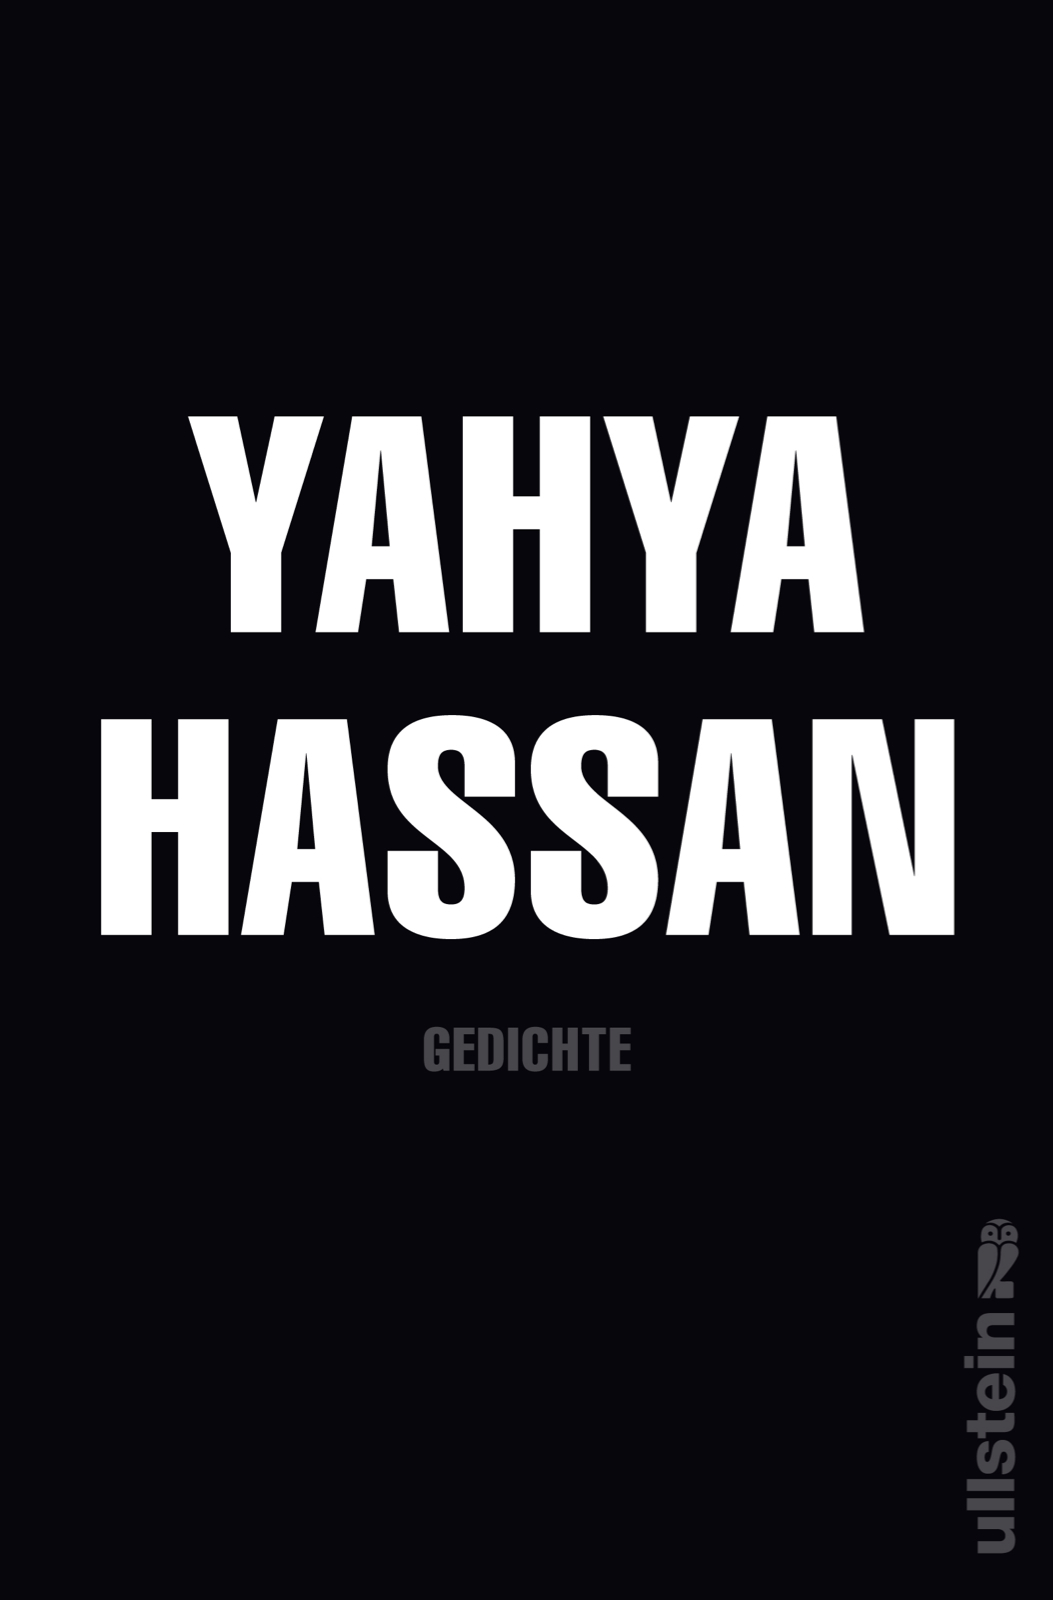 Buchcover "Gedichte" von Yahya Hassan; Foto: Ullstein